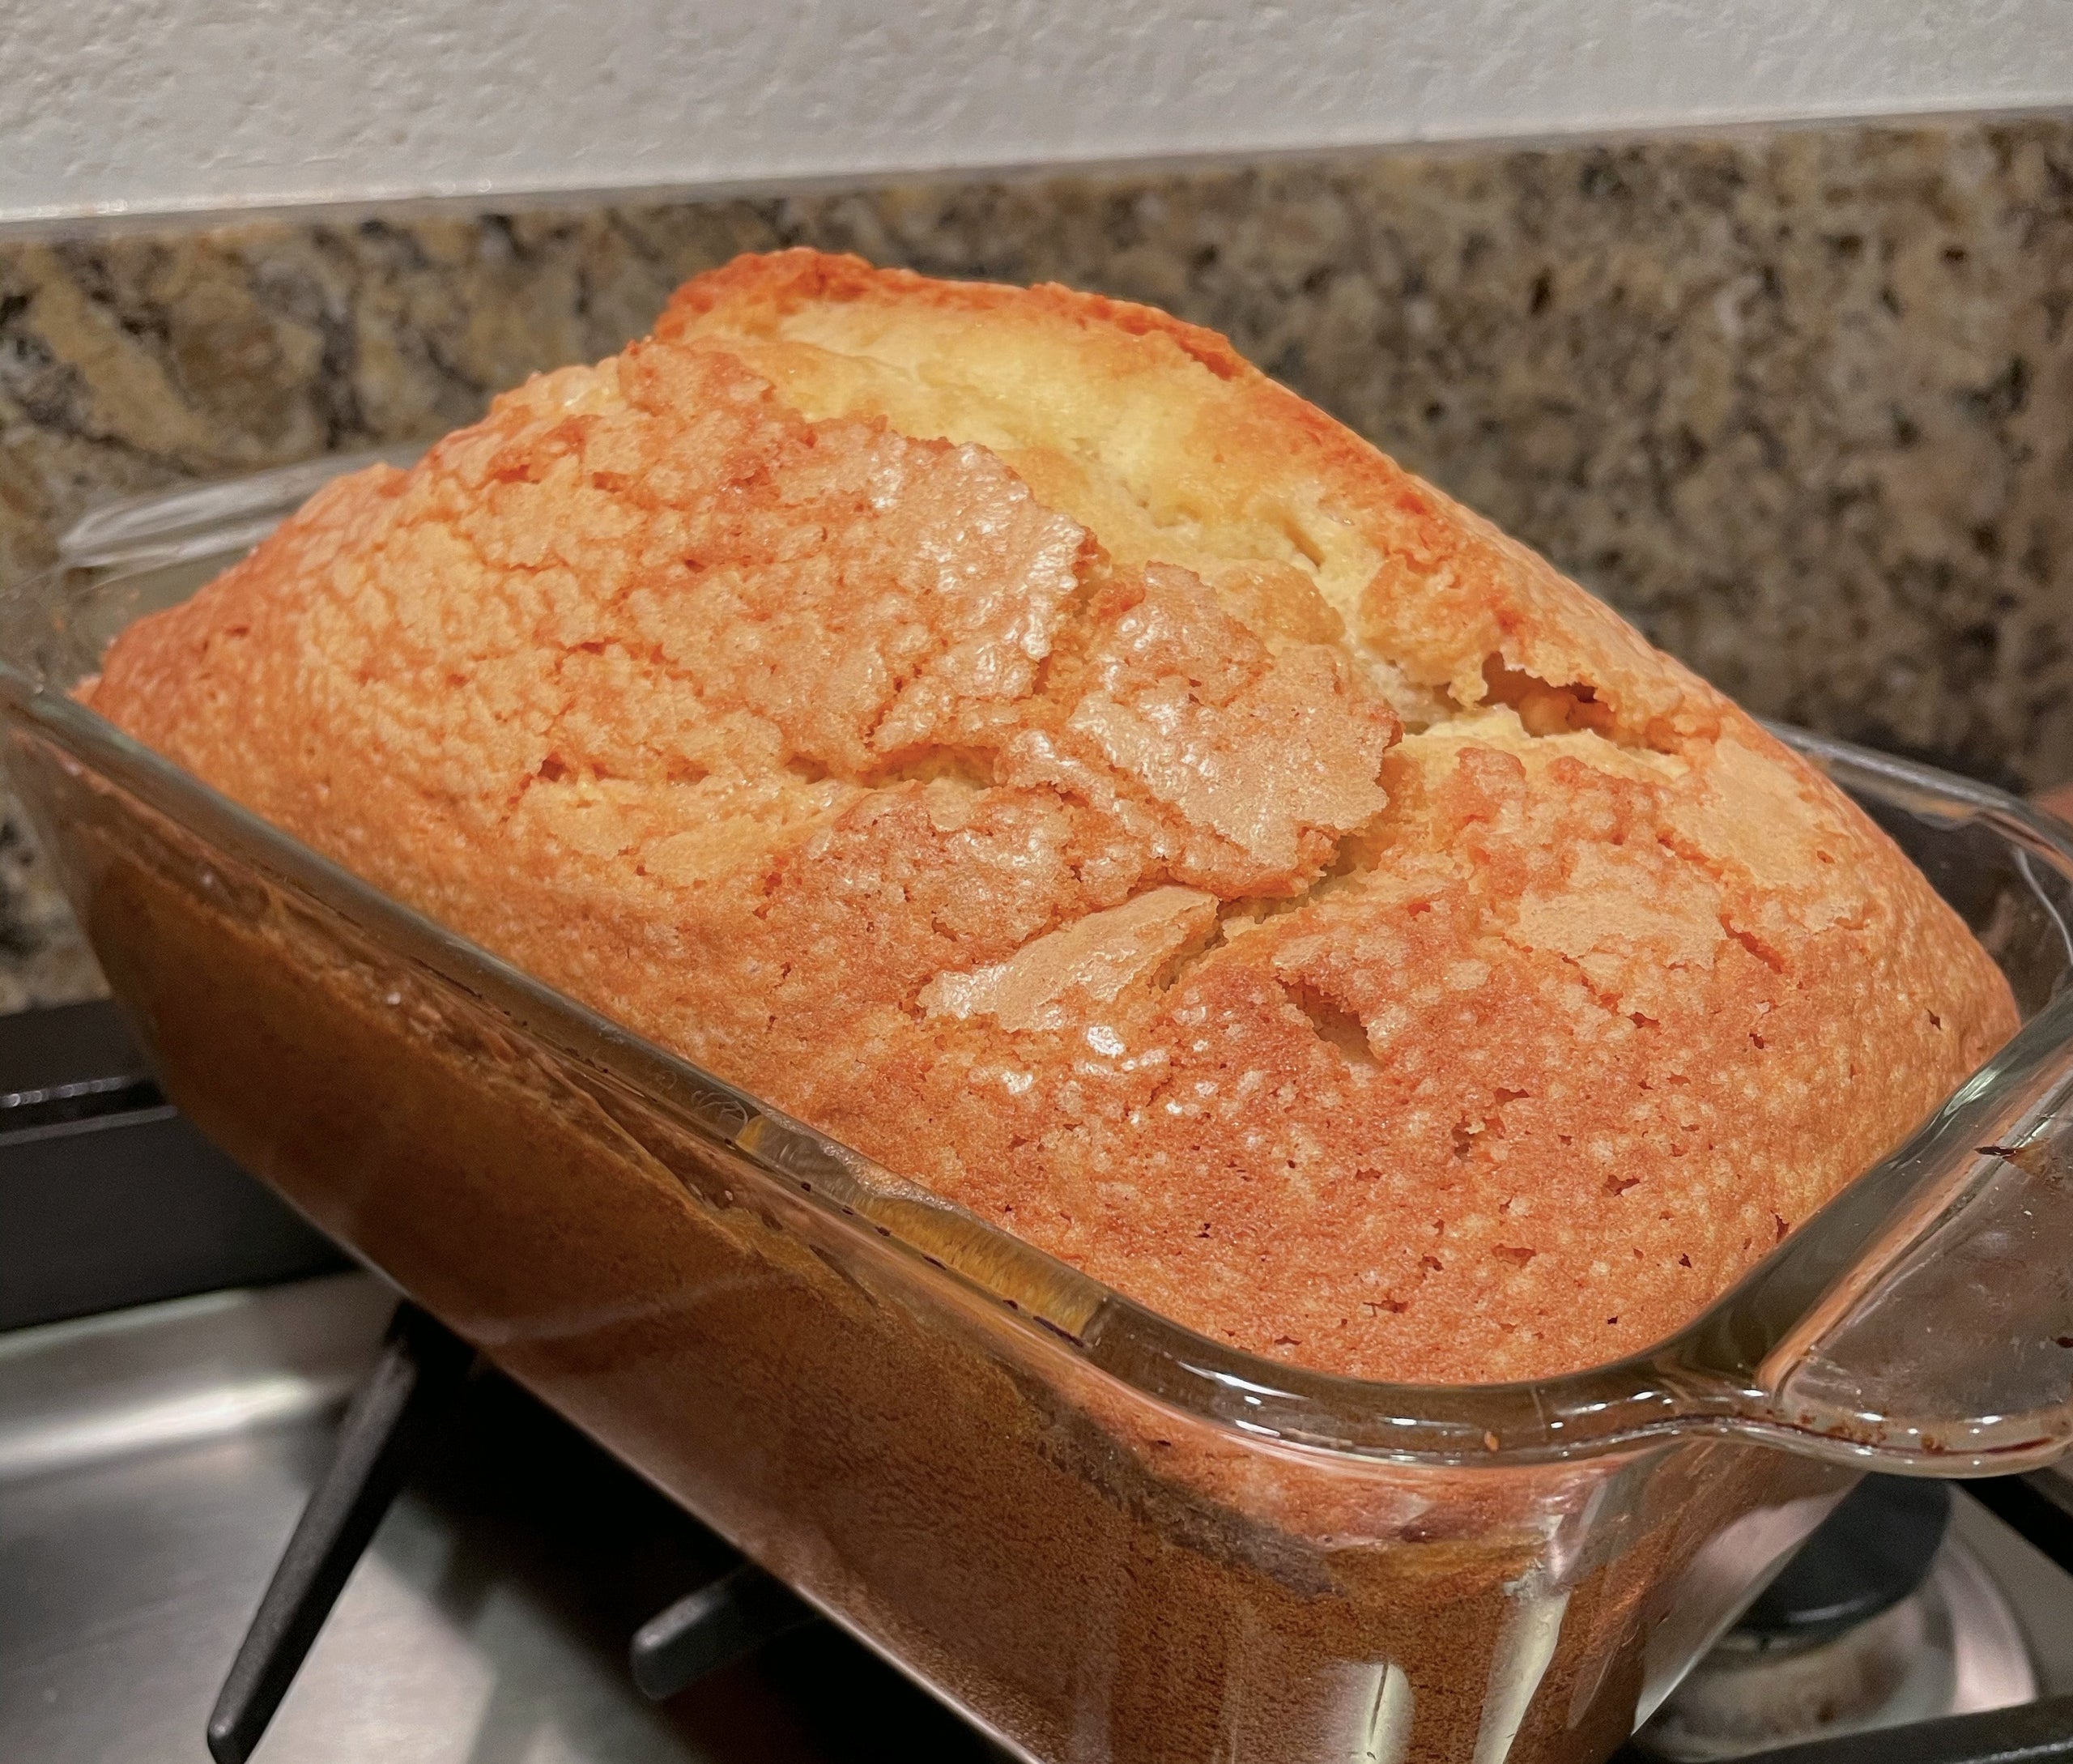 Loaf Pan, Pound Cake Baking Pan